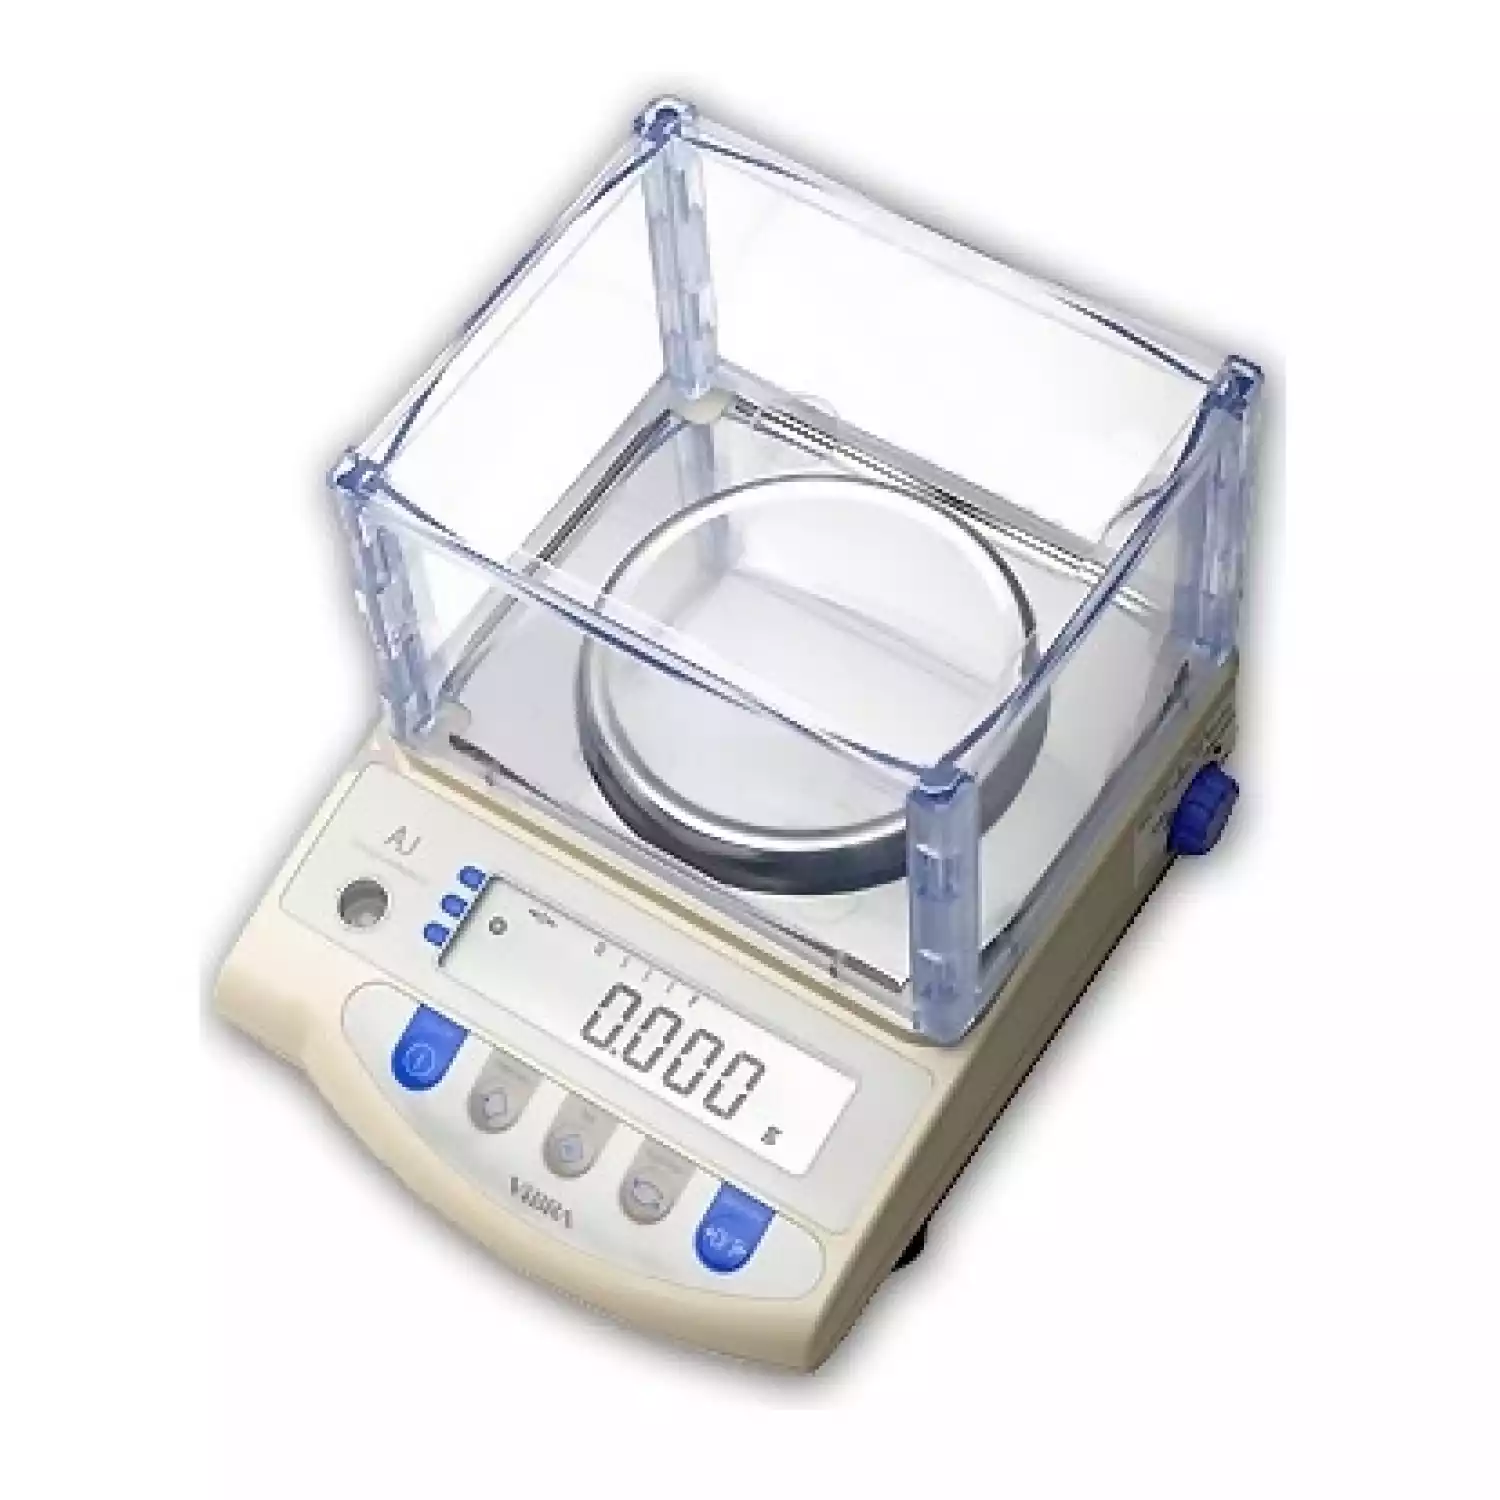 AJ-420CE весы лабораторные (НПВ=420 г; d=0,001 г) - 1